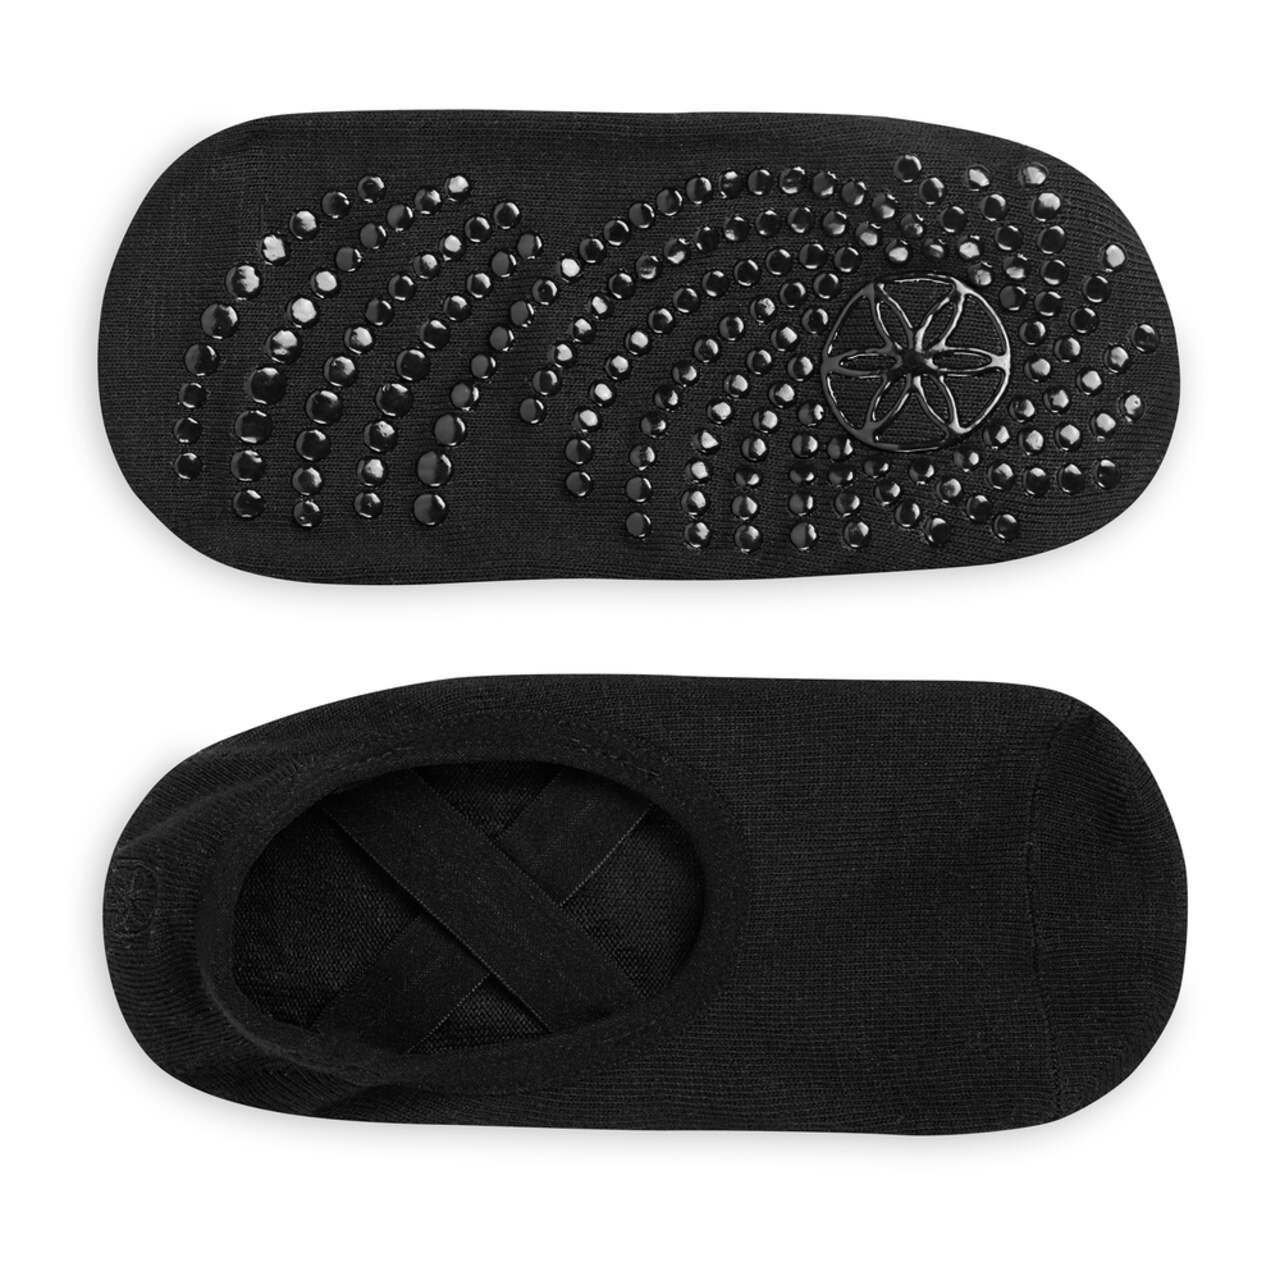 Gaiam Grippy Yoga Socks - Black/Grey, Medium/Large : Gaiam: :  Fashion